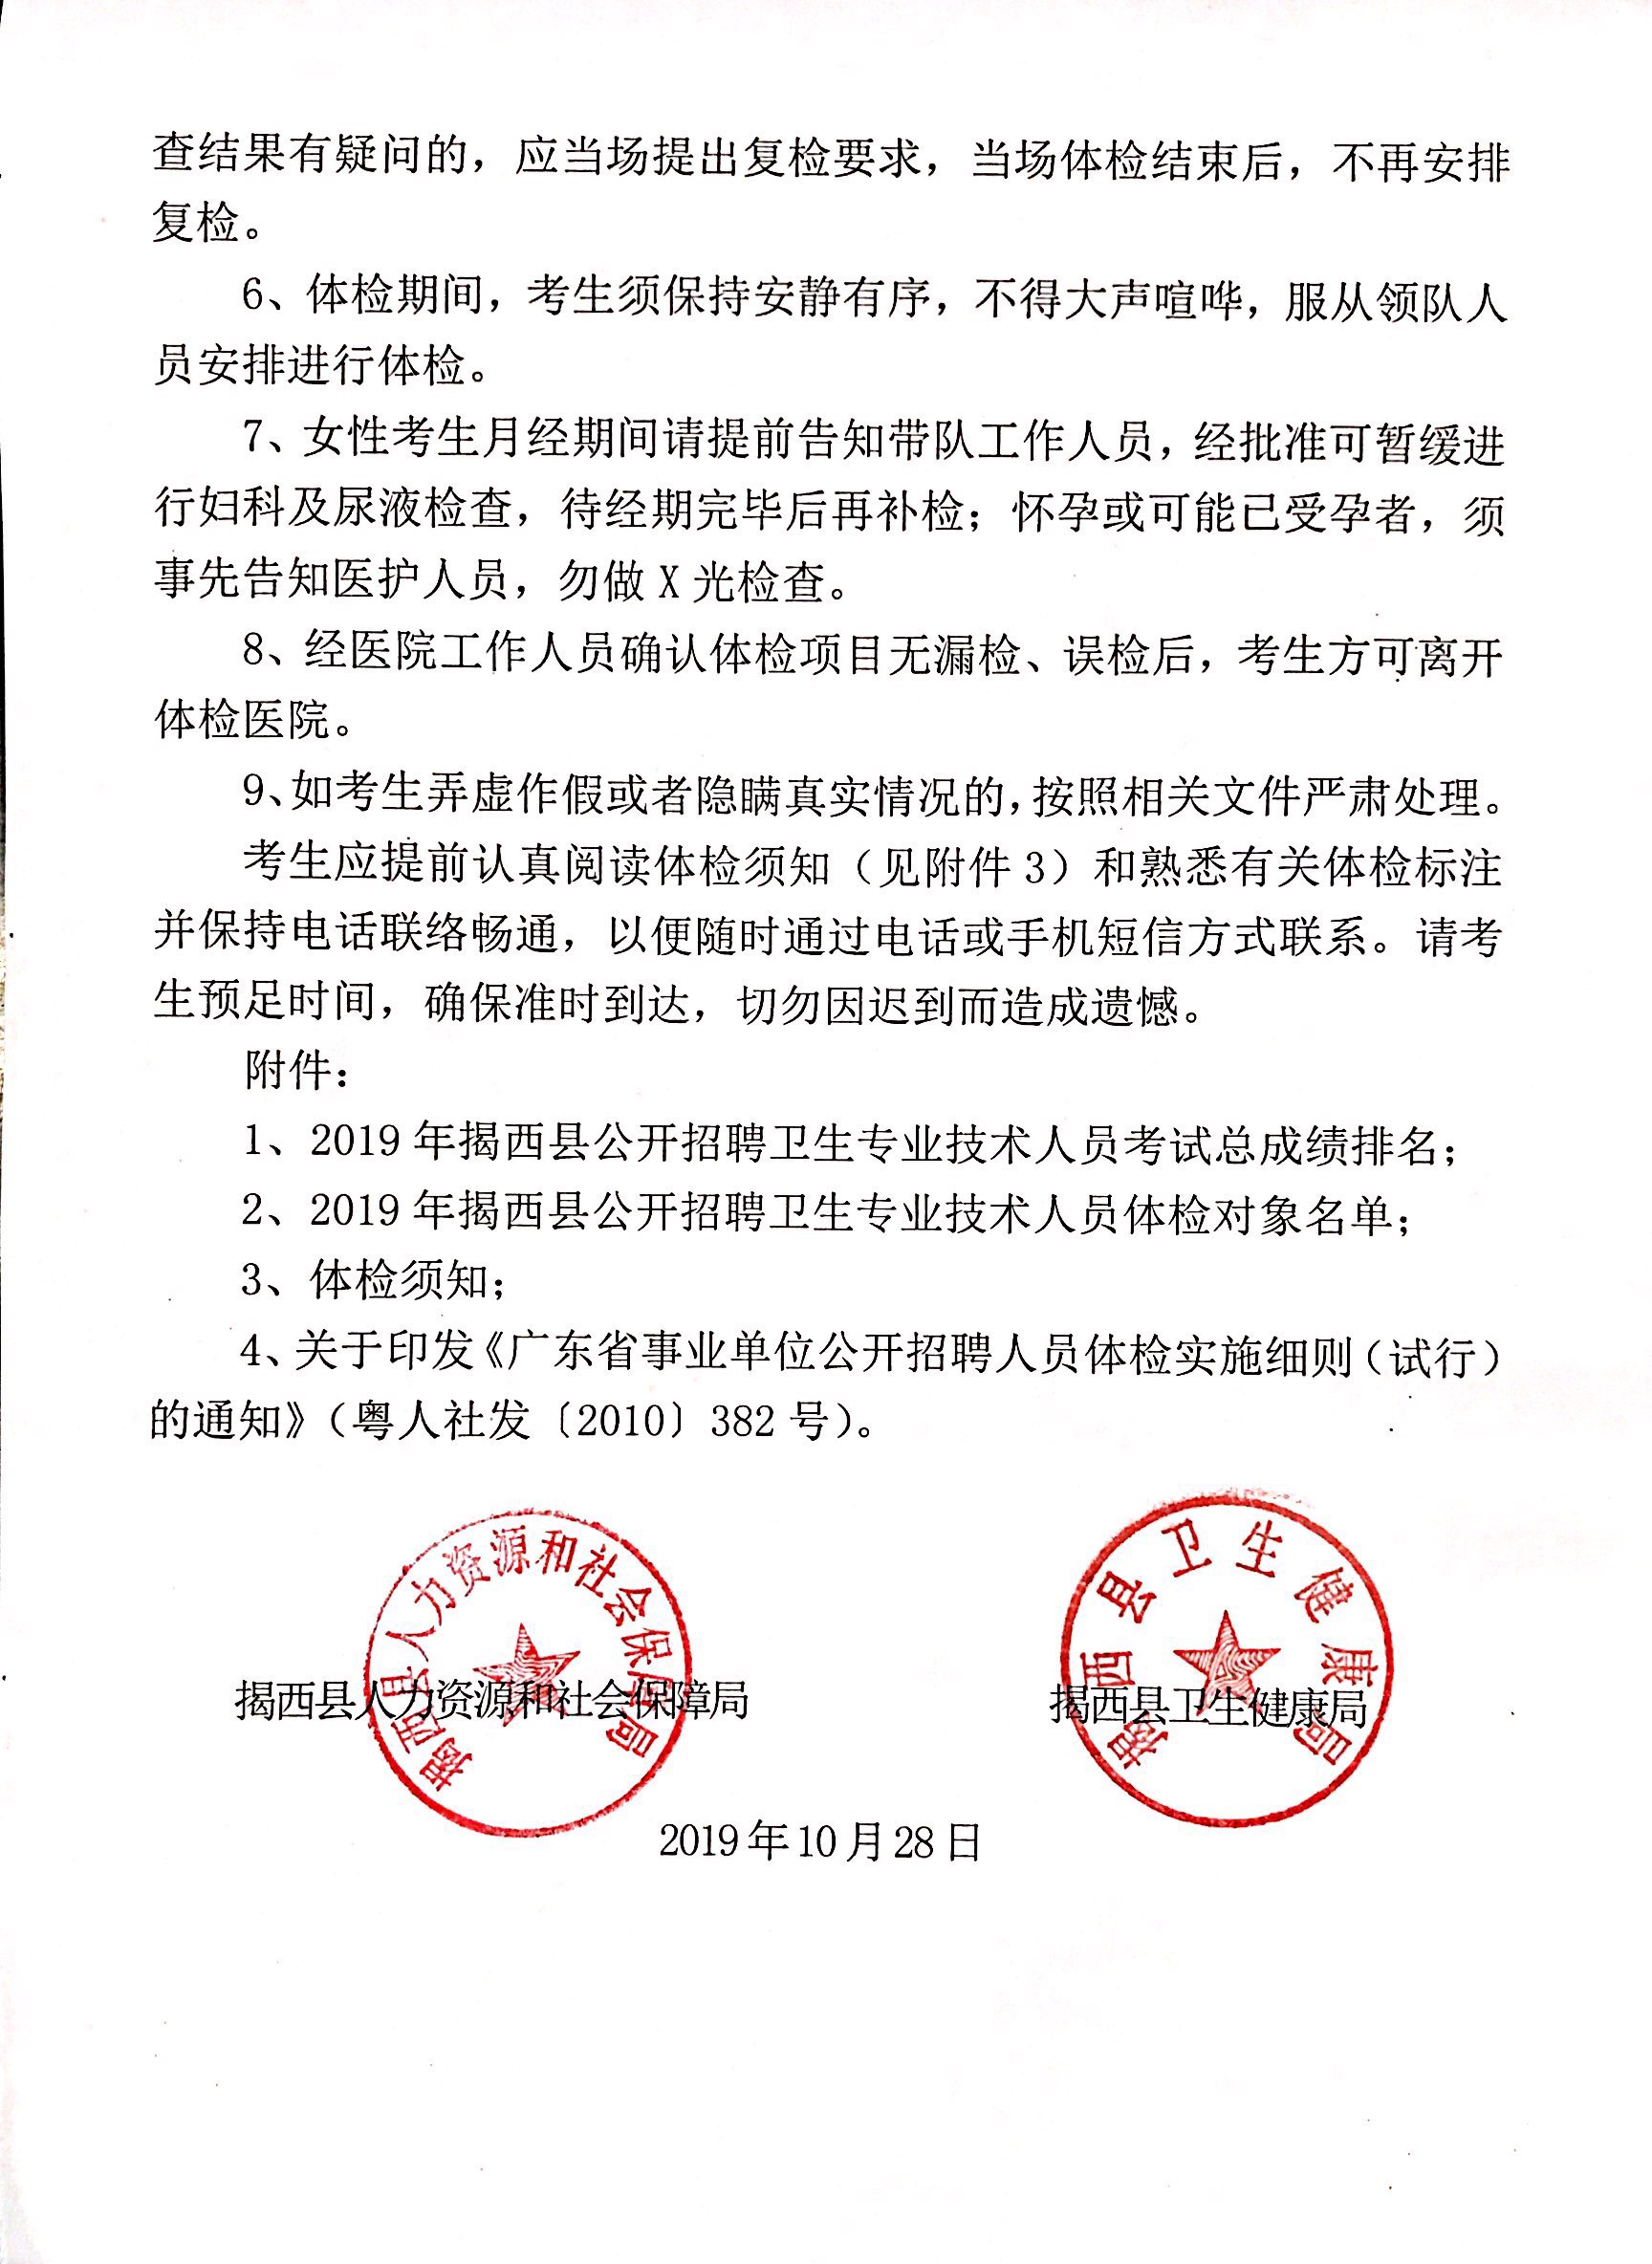 关于2019年揭西县公开招聘卫生专业技术人员体检的通知2.jpg